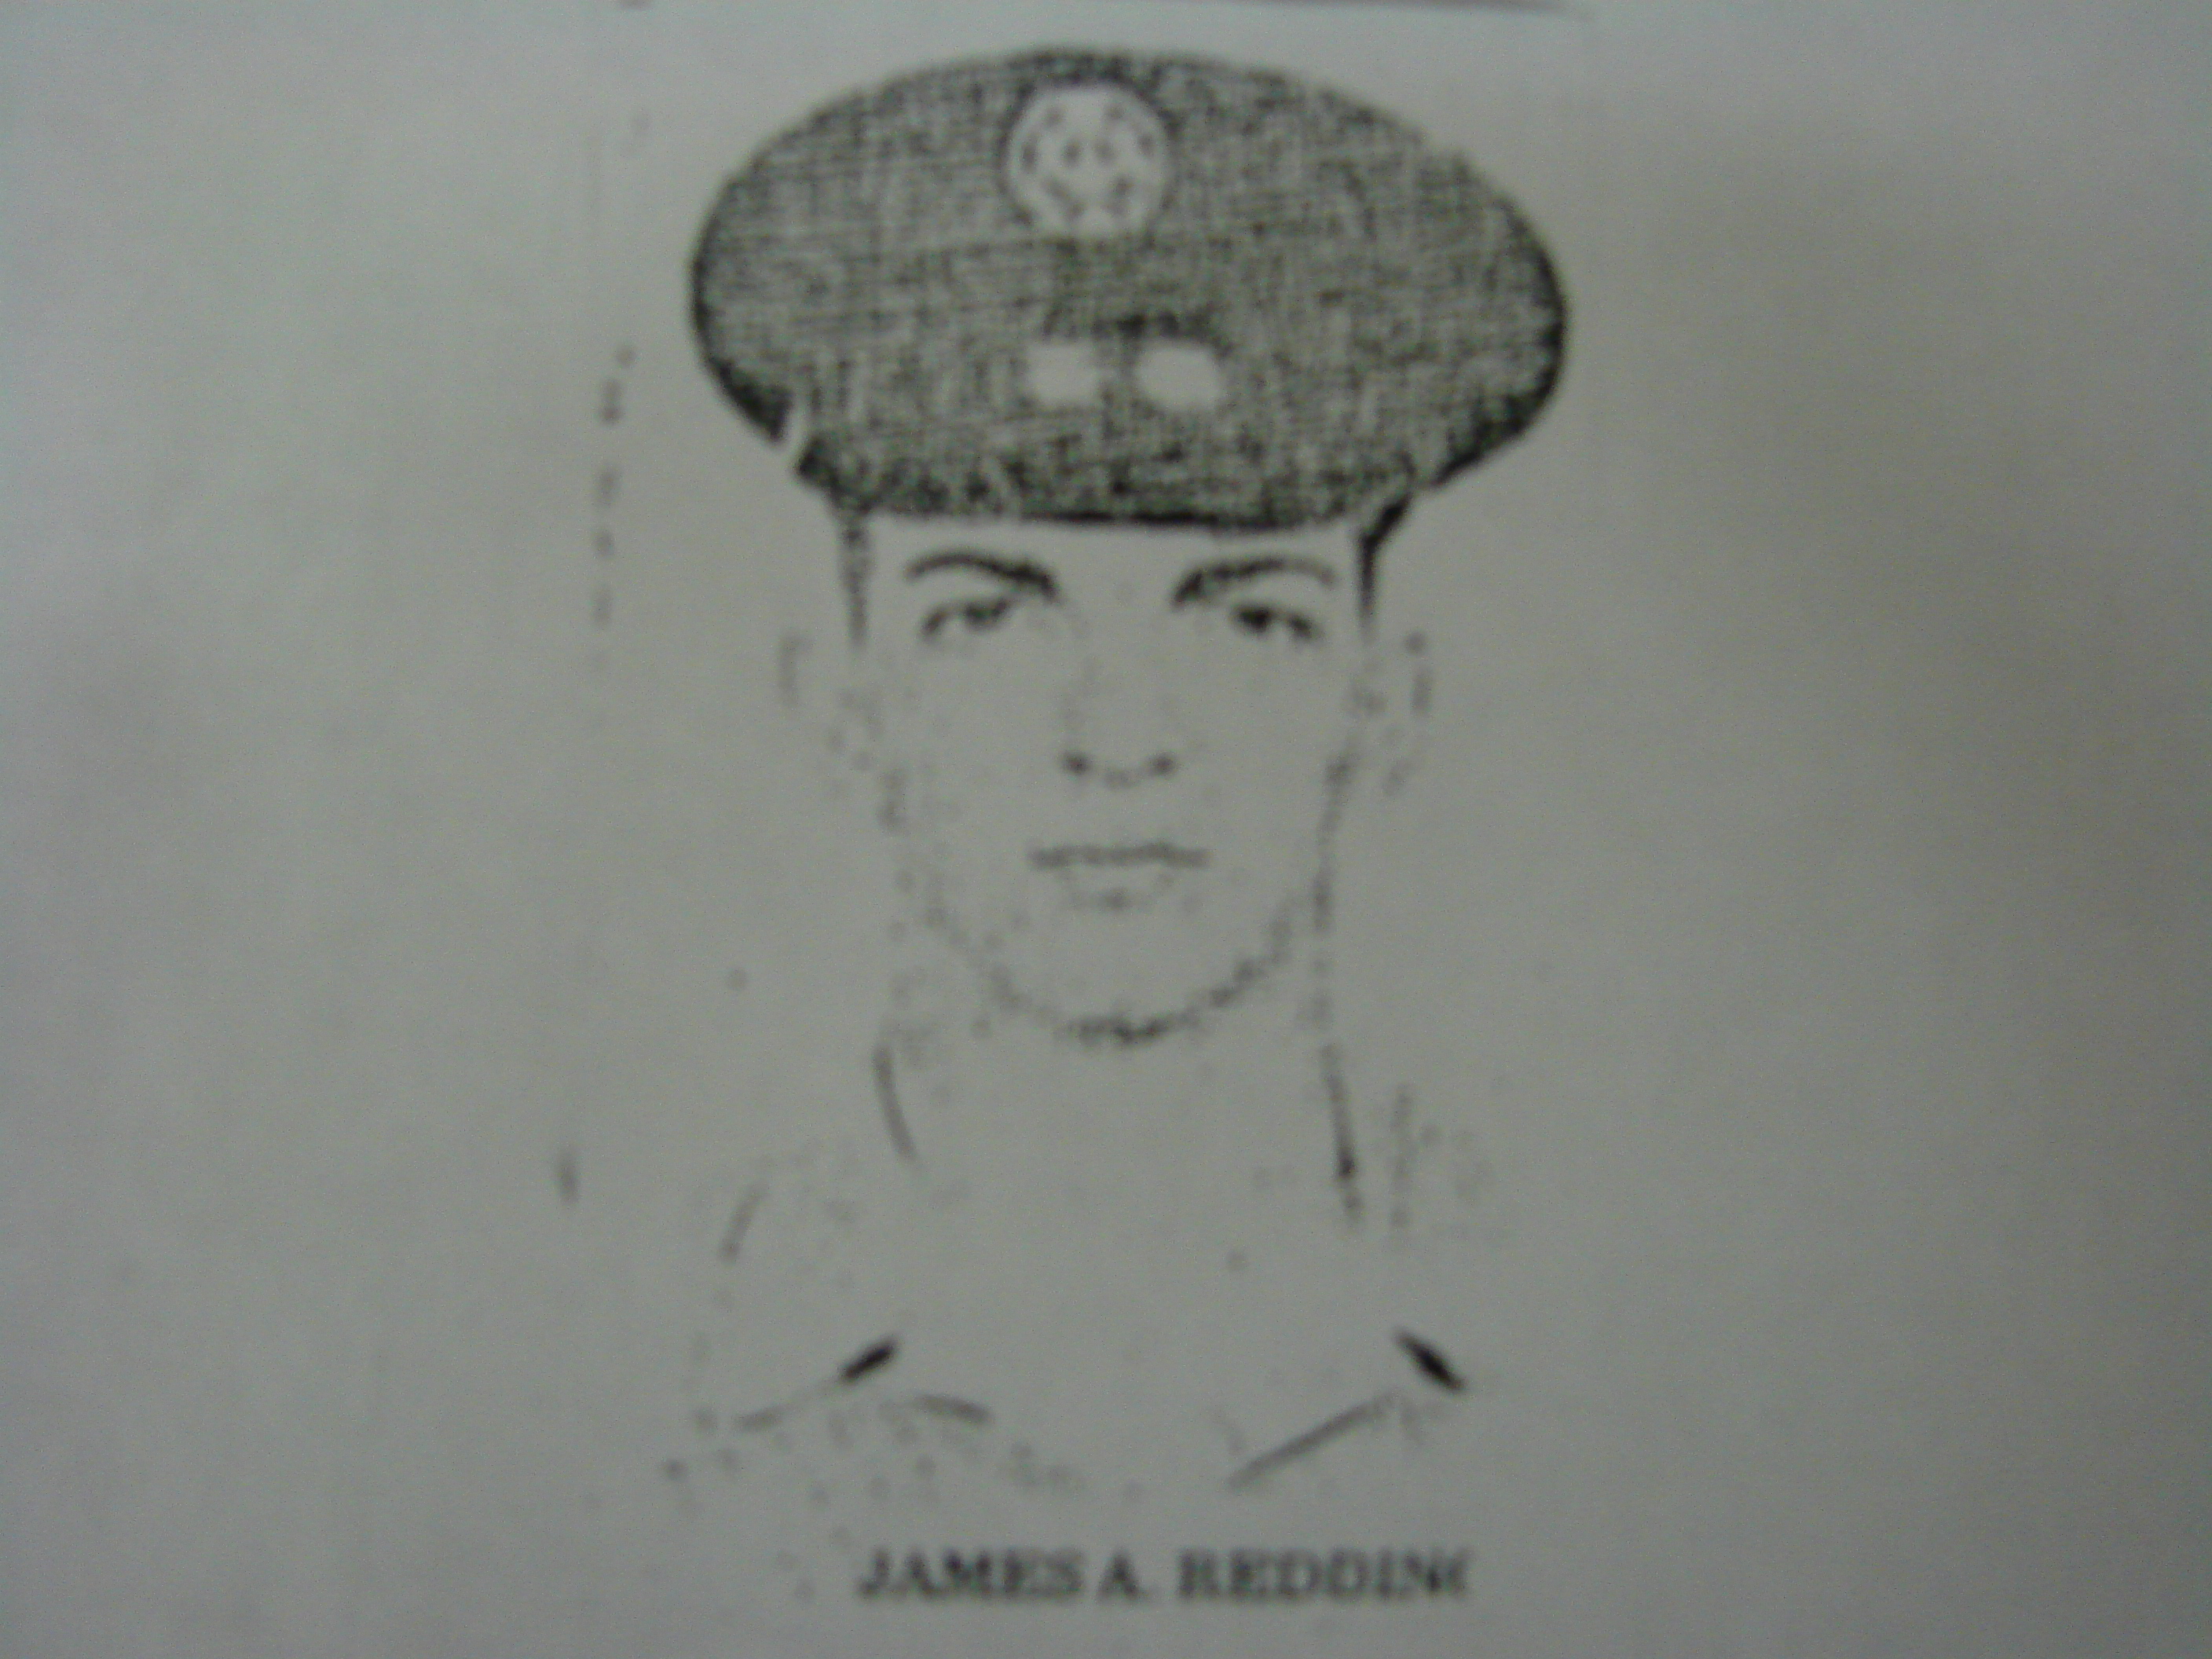 James A. Redding